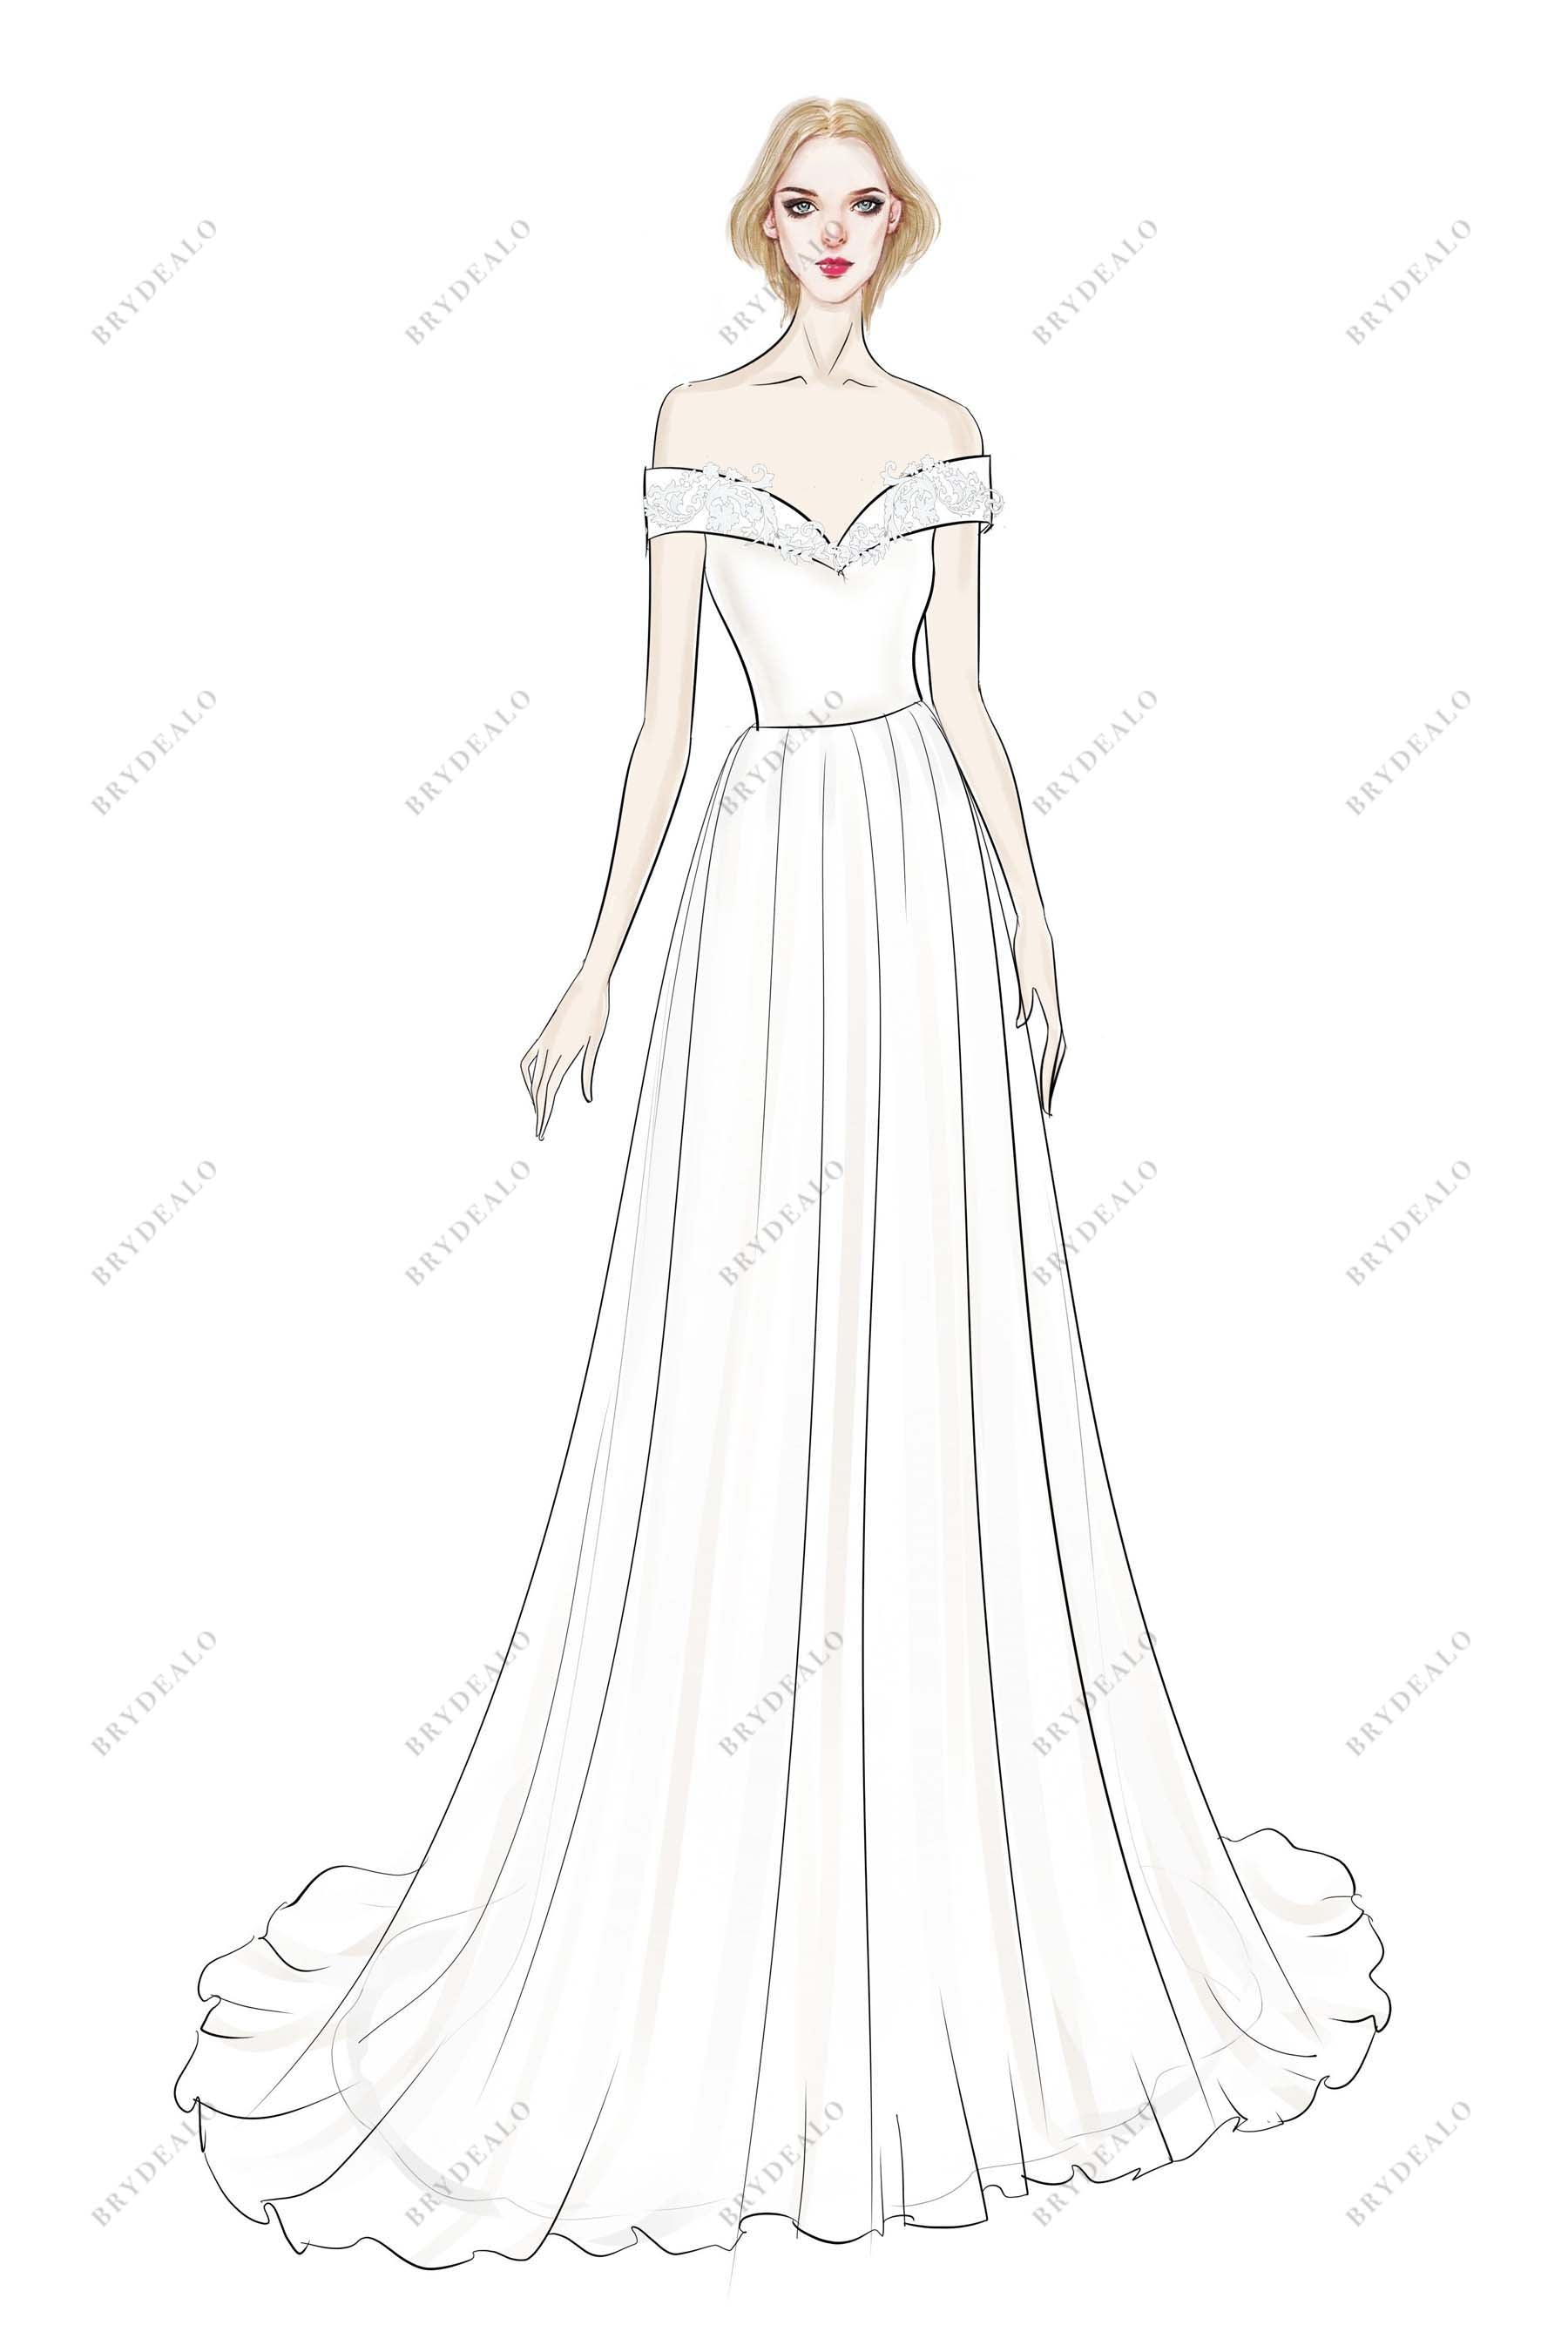 Off-shoulder A-line Designer Bridal Dress Sketch